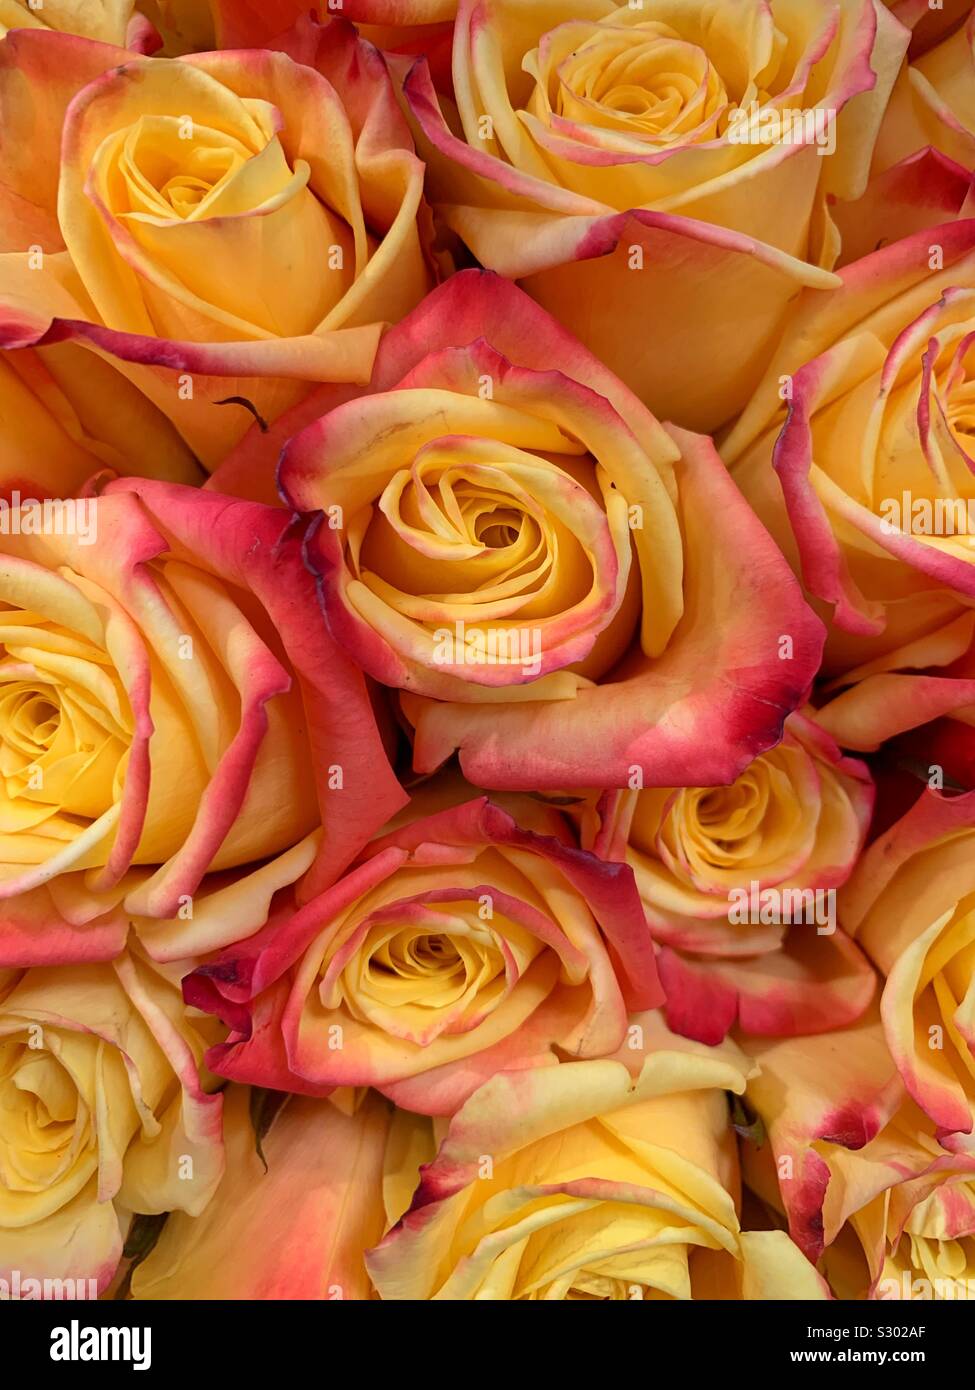 Bel bouquet di fresche rose giallo con frangia rosa Foto Stock